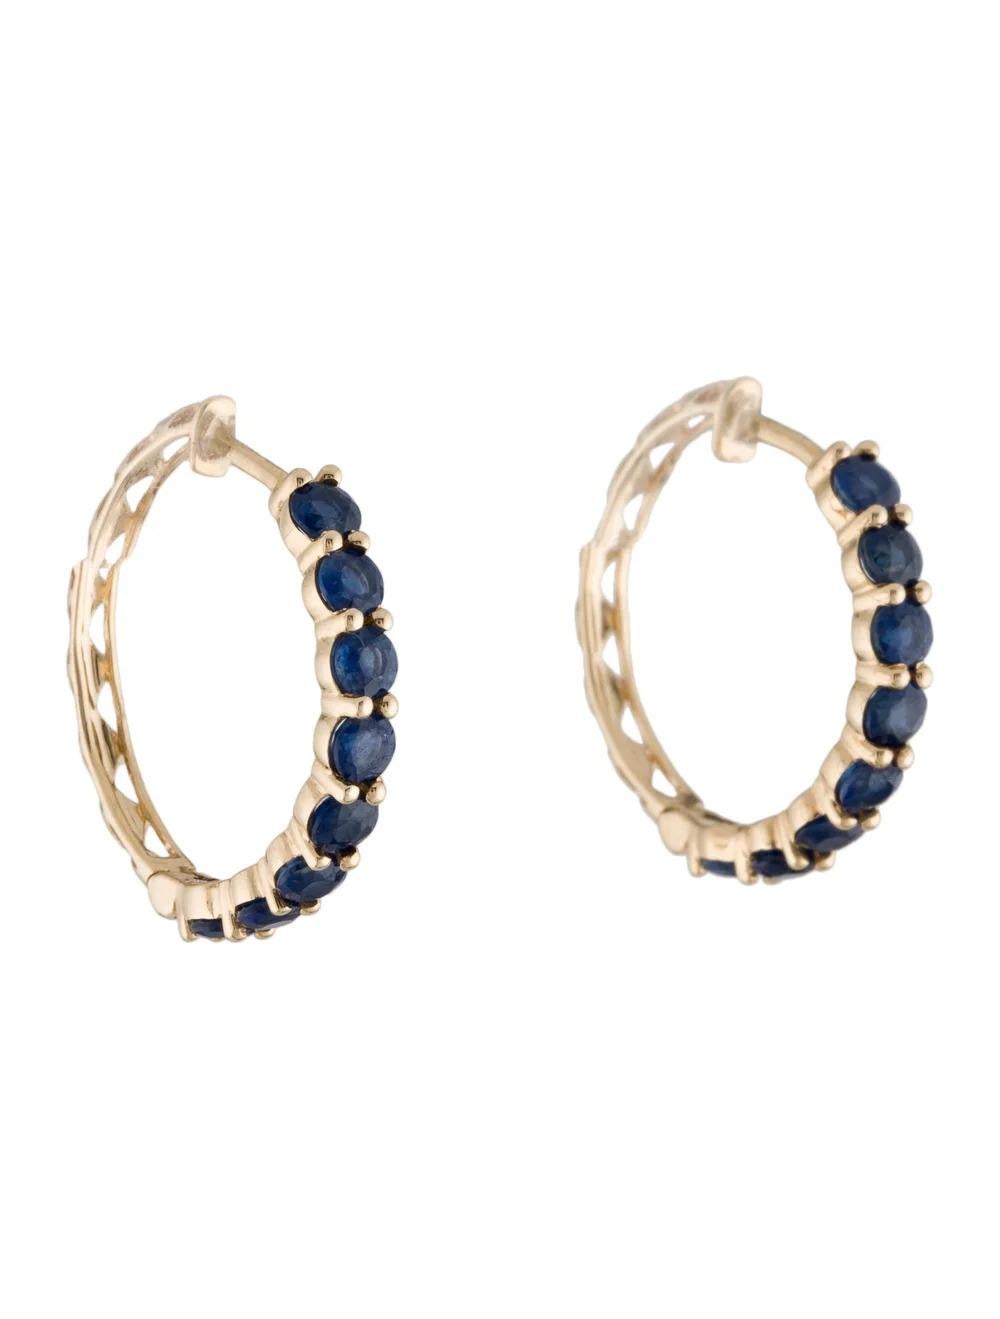 Unsere exquisiten 14K Gelbgold Sapphire Hoop Earrings sind eine atemberaubende Ergänzung zu Ihrer Schmucksammlung.

Spezifikationen:

* Metall: 14K Gelbgold
* Länge: 0,75